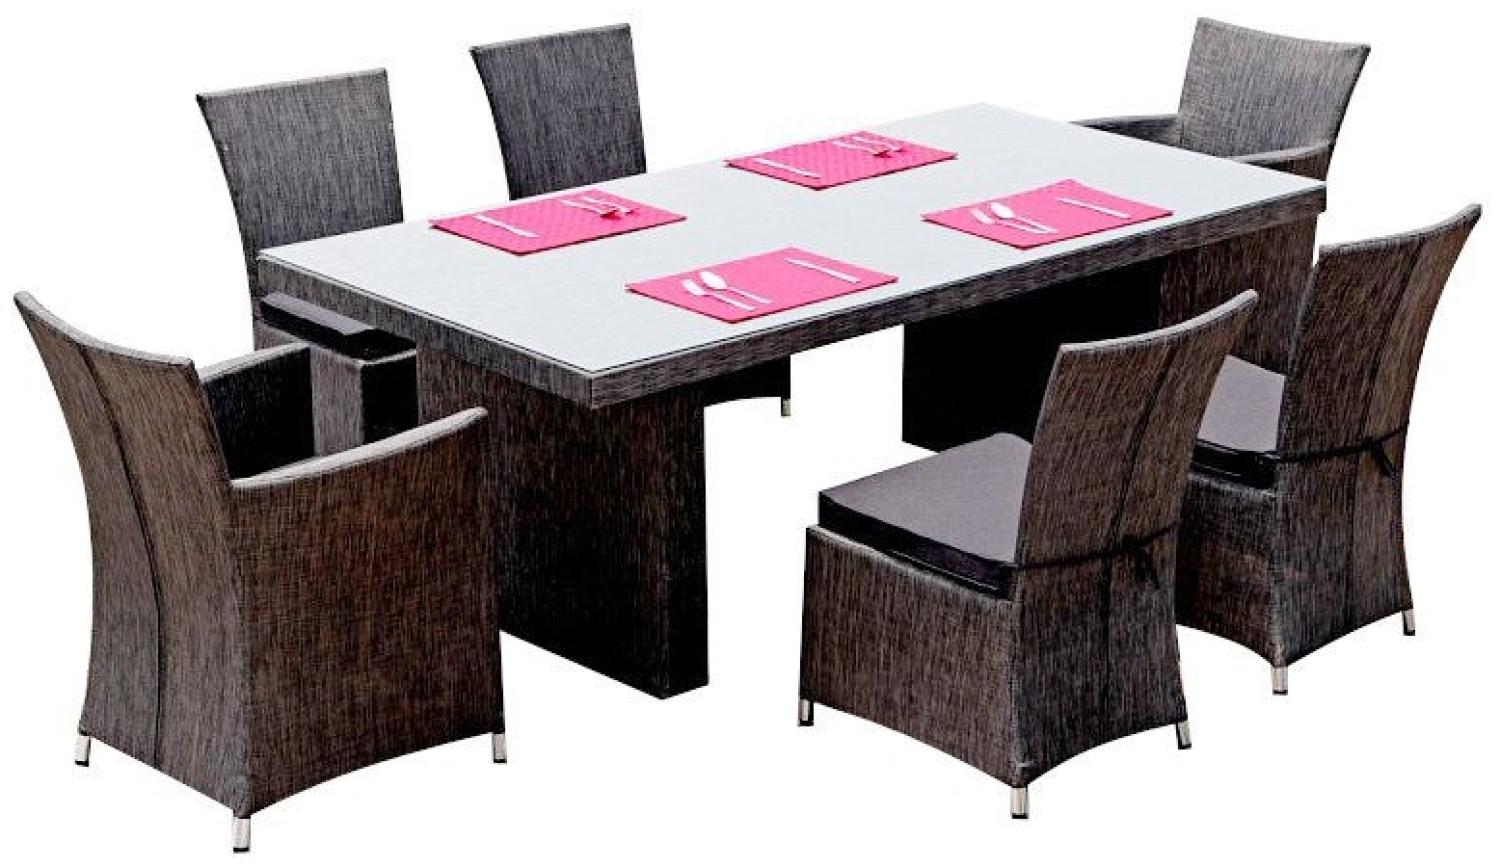 Jet-Line Essgruppe Rügen, 7-tlg, 1 Tisch (inklusive Glasplatte), 2 Stühle mit Armlehne, 4 Stühle ohne Armlehne, Kissen, Aluminium (Gestell), Kunststoff (Sitzfläche), anthrazit (2020) Bild 1